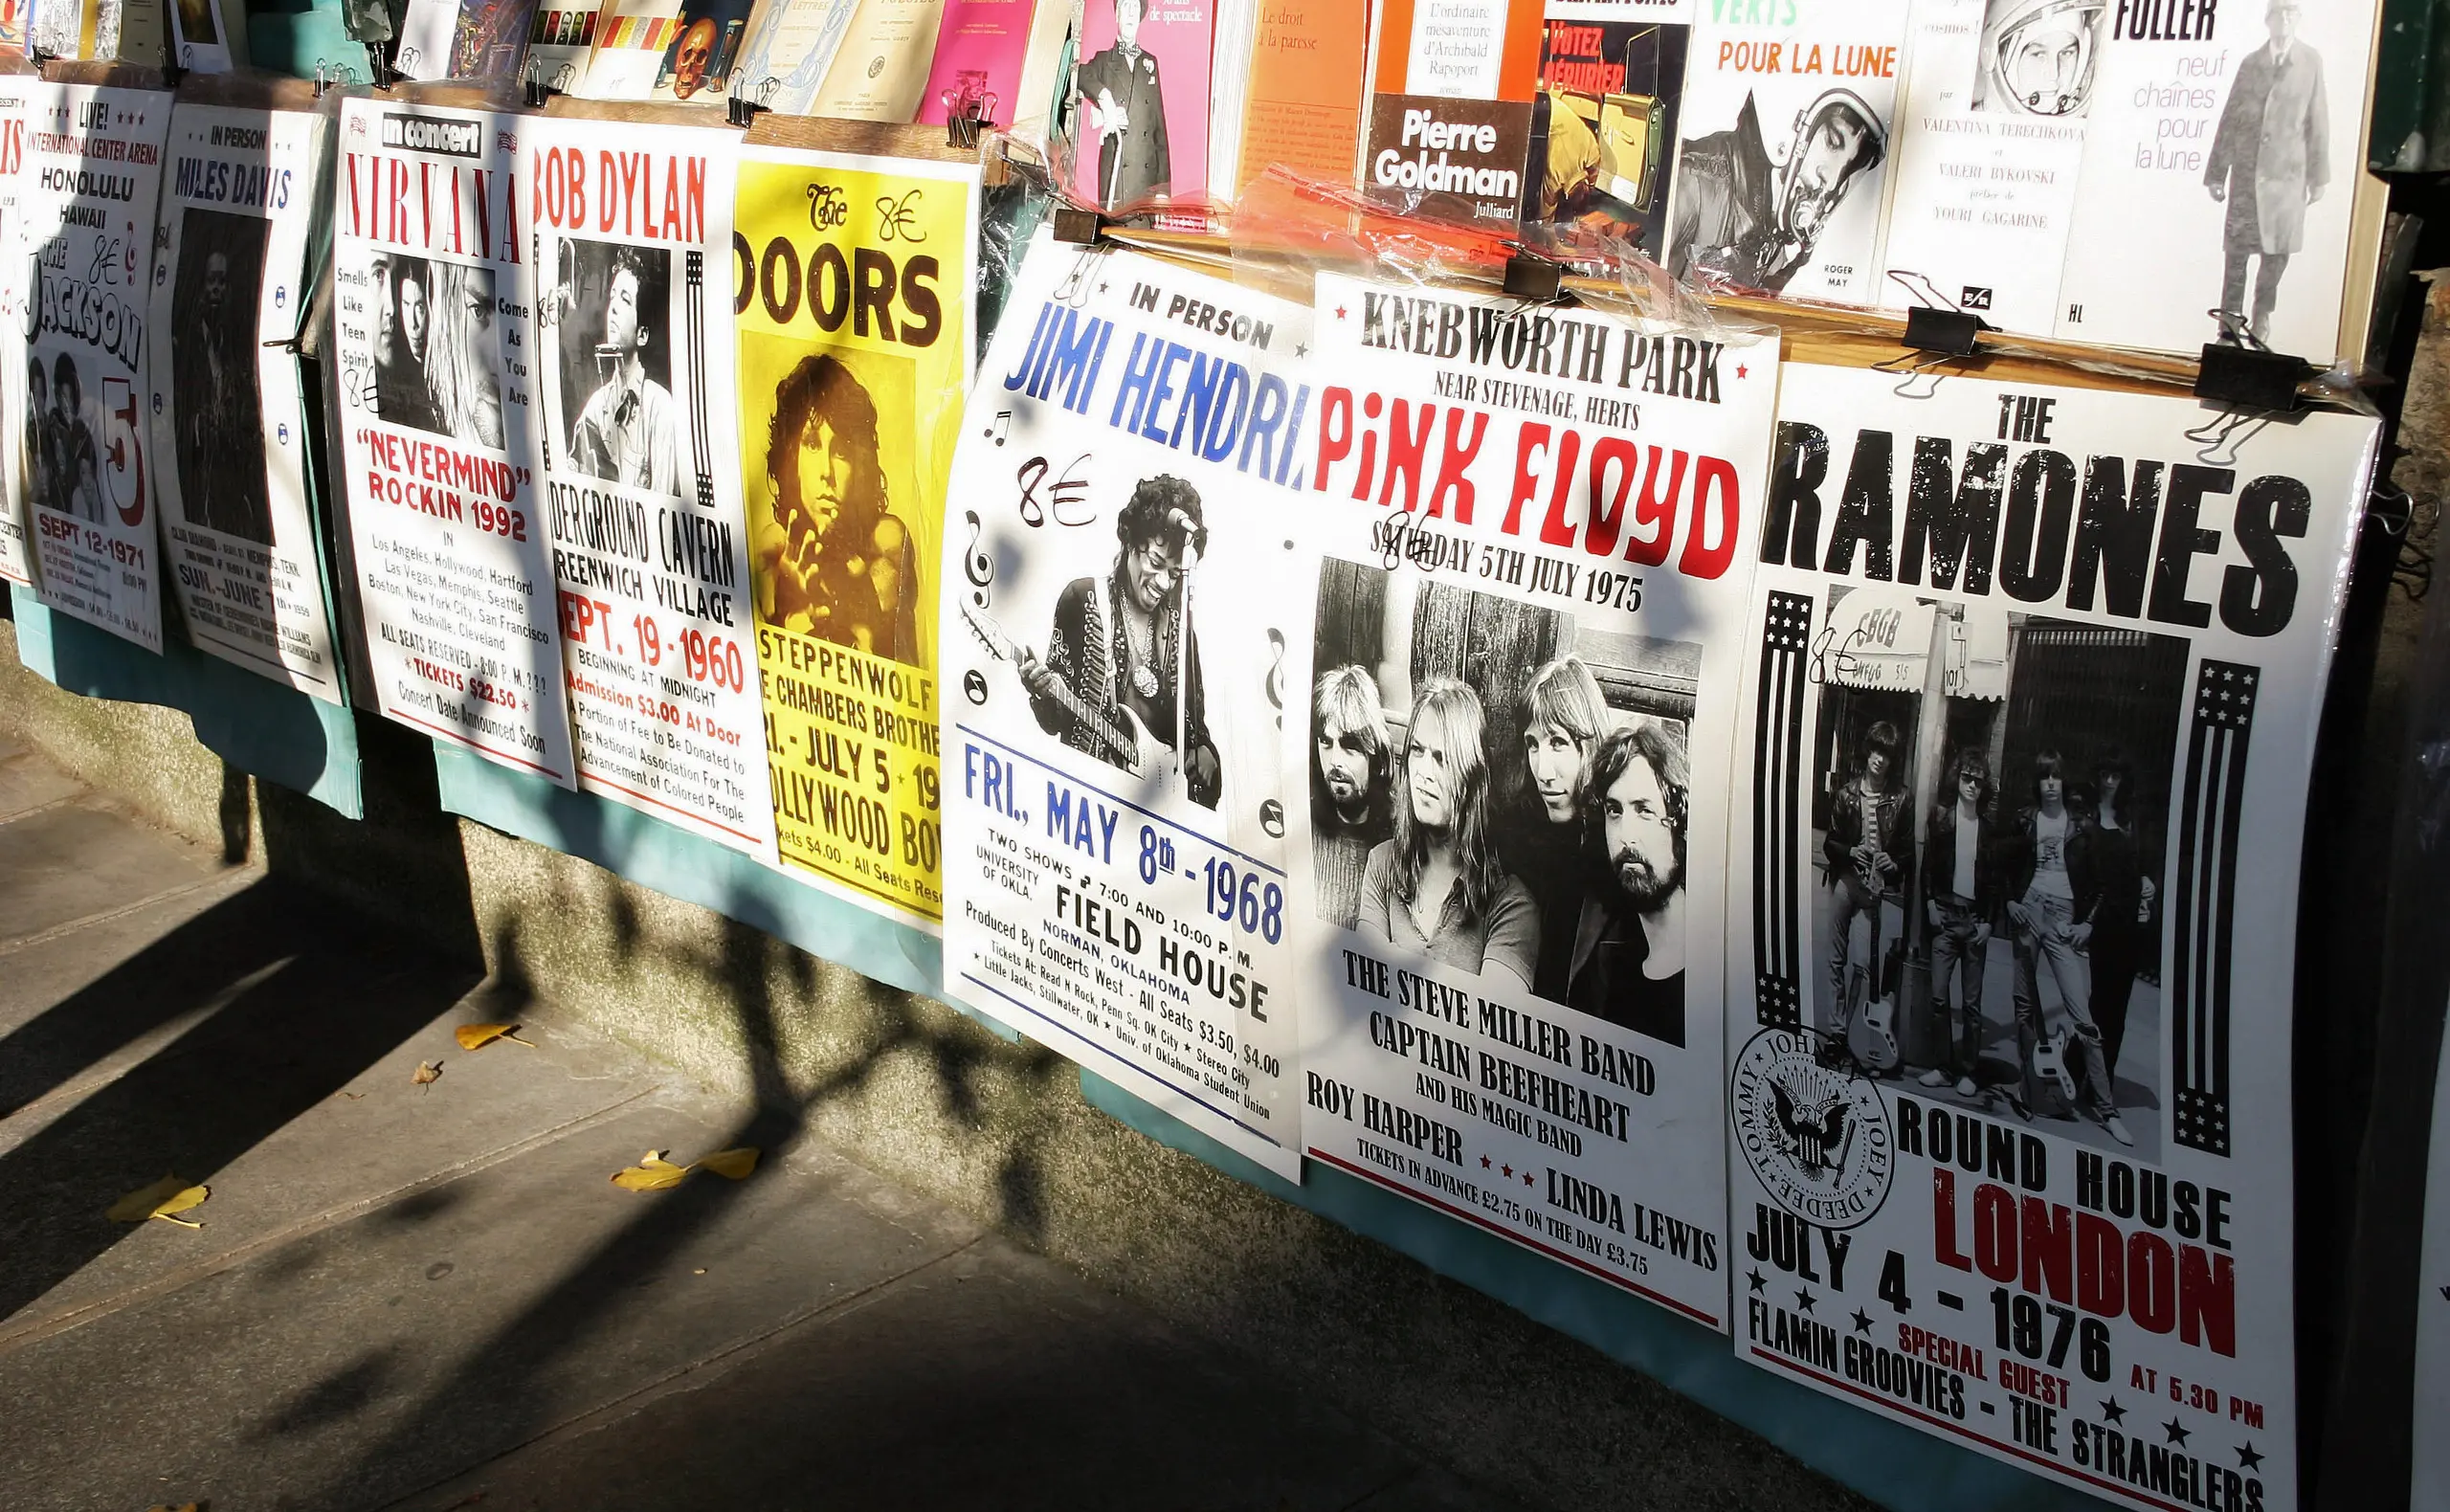 Werbeplakate für die verschiedenen Bands.